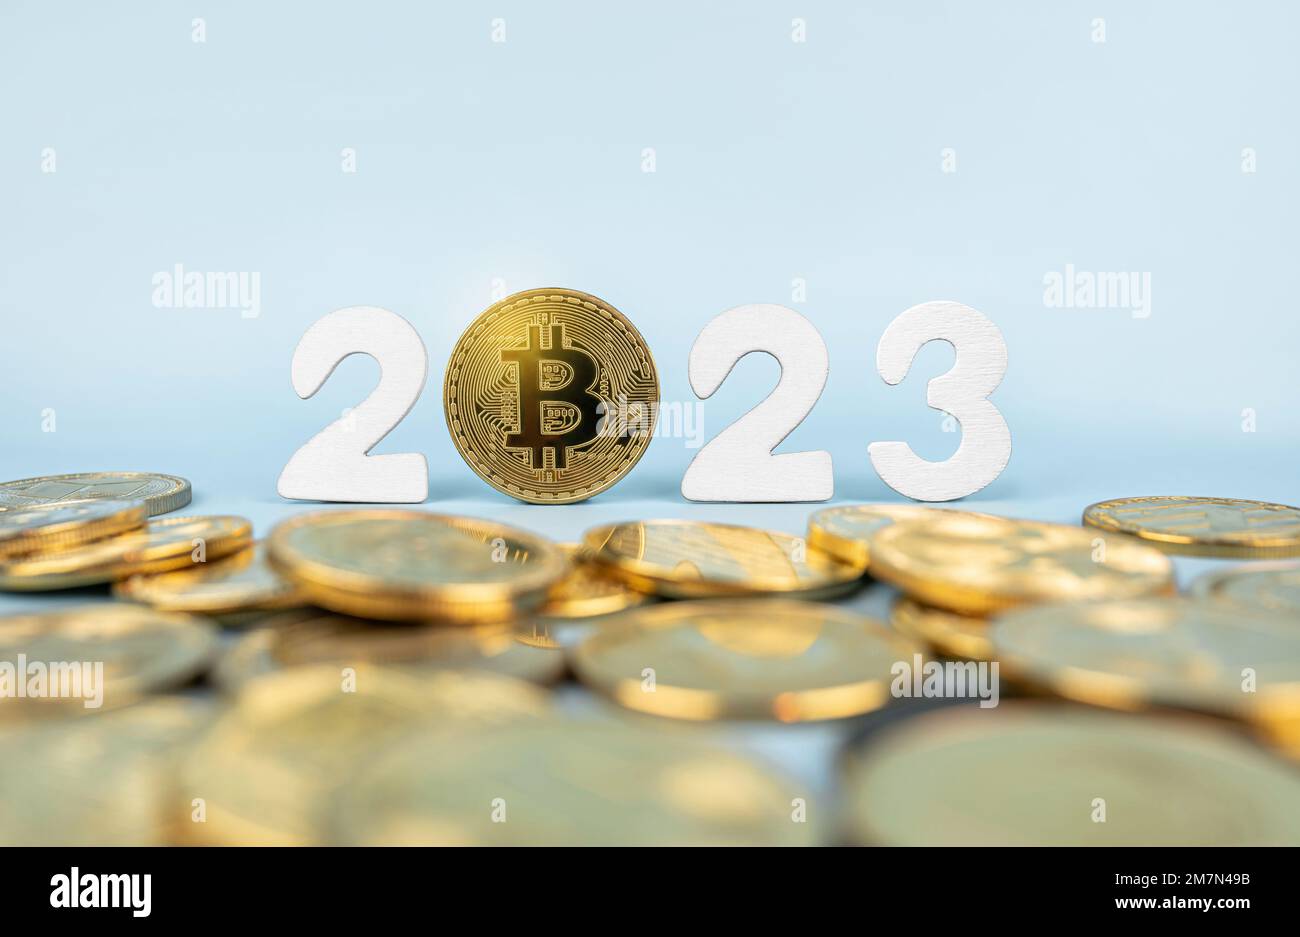 Bitcoin 2023-Preisprognose. BTC-Münze neben Kryptowährungs-Token und Jahreszahlen auf blauem Hintergrund. Nahaufnahme, Soft Focus. Stockfoto